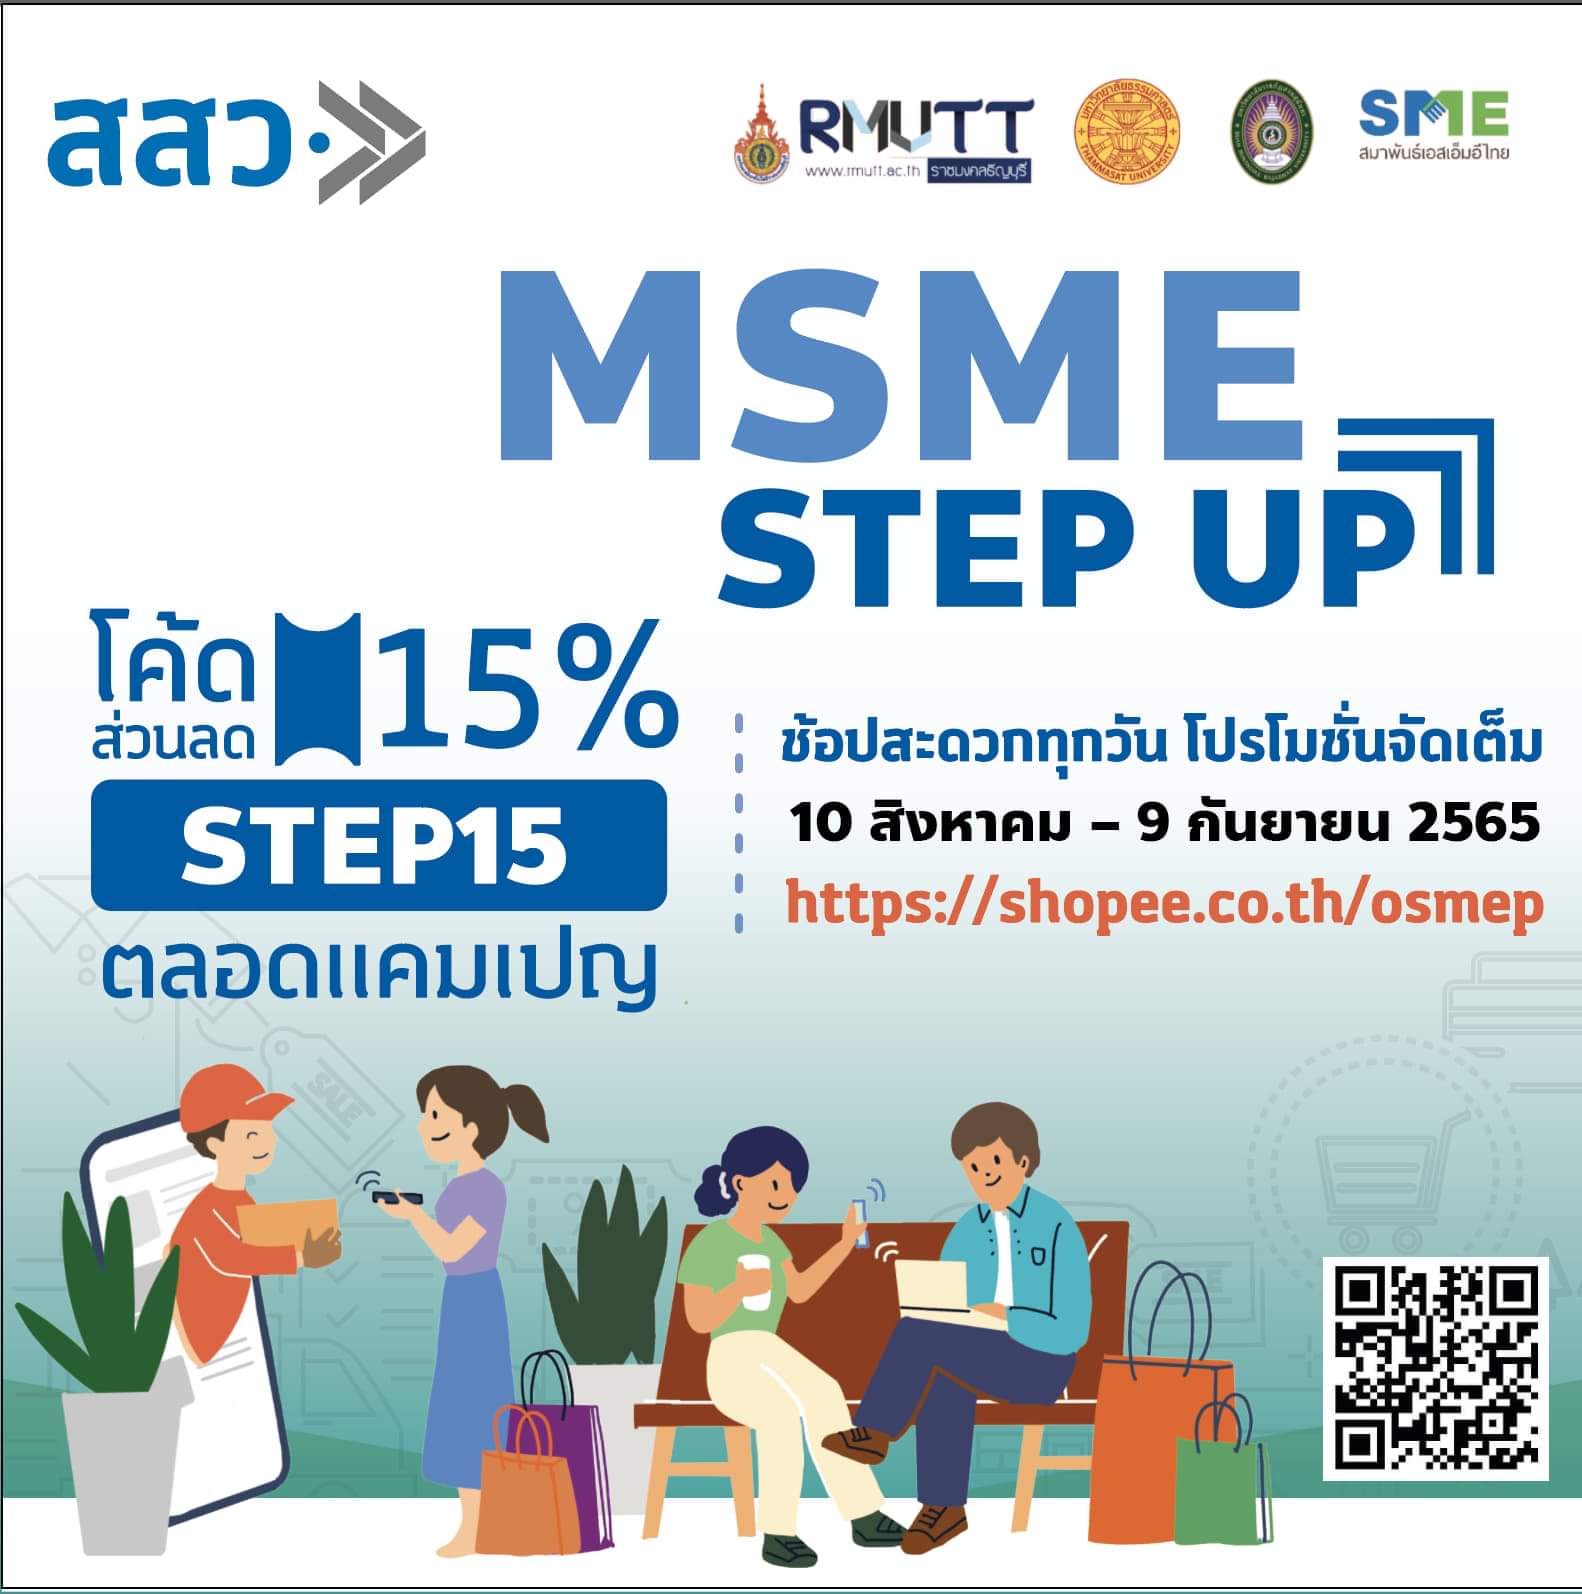 สสว. ผนึก 4 หน่วยร่วม หนุน “MSME Step Up” ต่อยอดขายสินค้าบนช้อปปี้